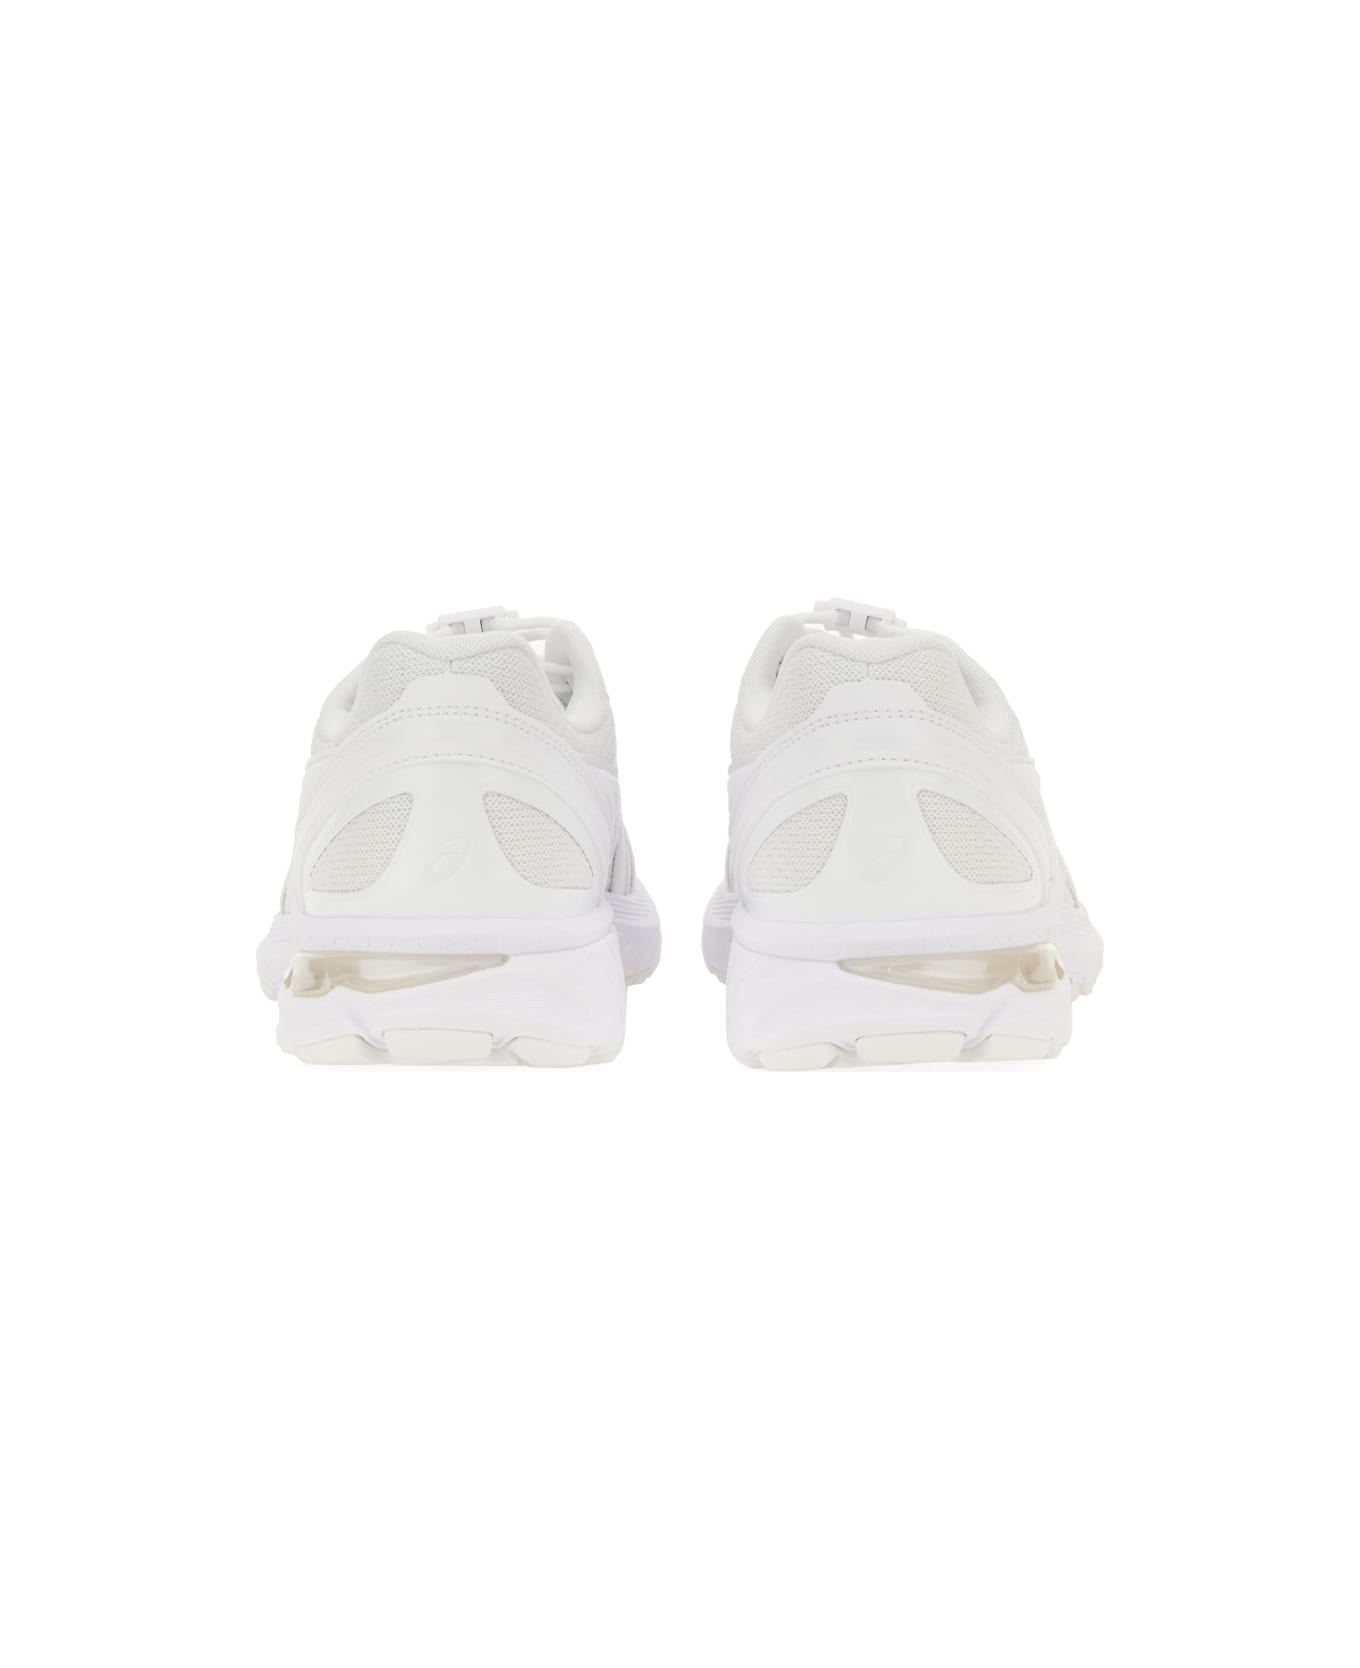 Comme des Garçons Shirt Sneaker Asics X Comme Des Garçons Shirt Gel-terrain - WHITE